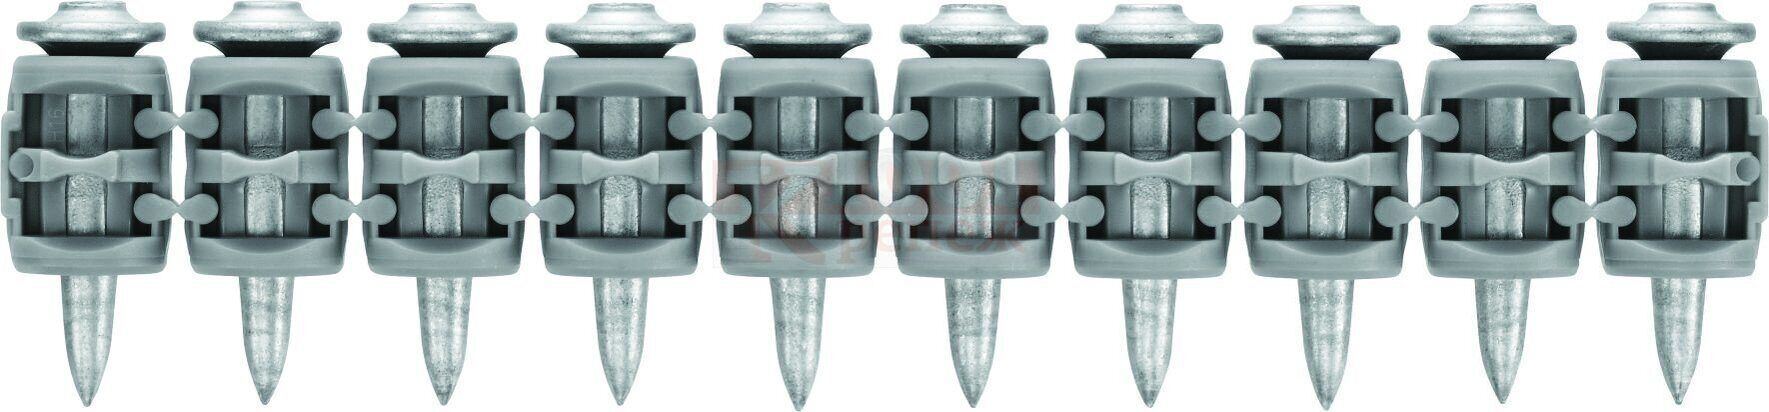 X-P17 BX3 MX Универсальный гвоздь HILTI оц. сталь, 17x3 мм (12000 шт)